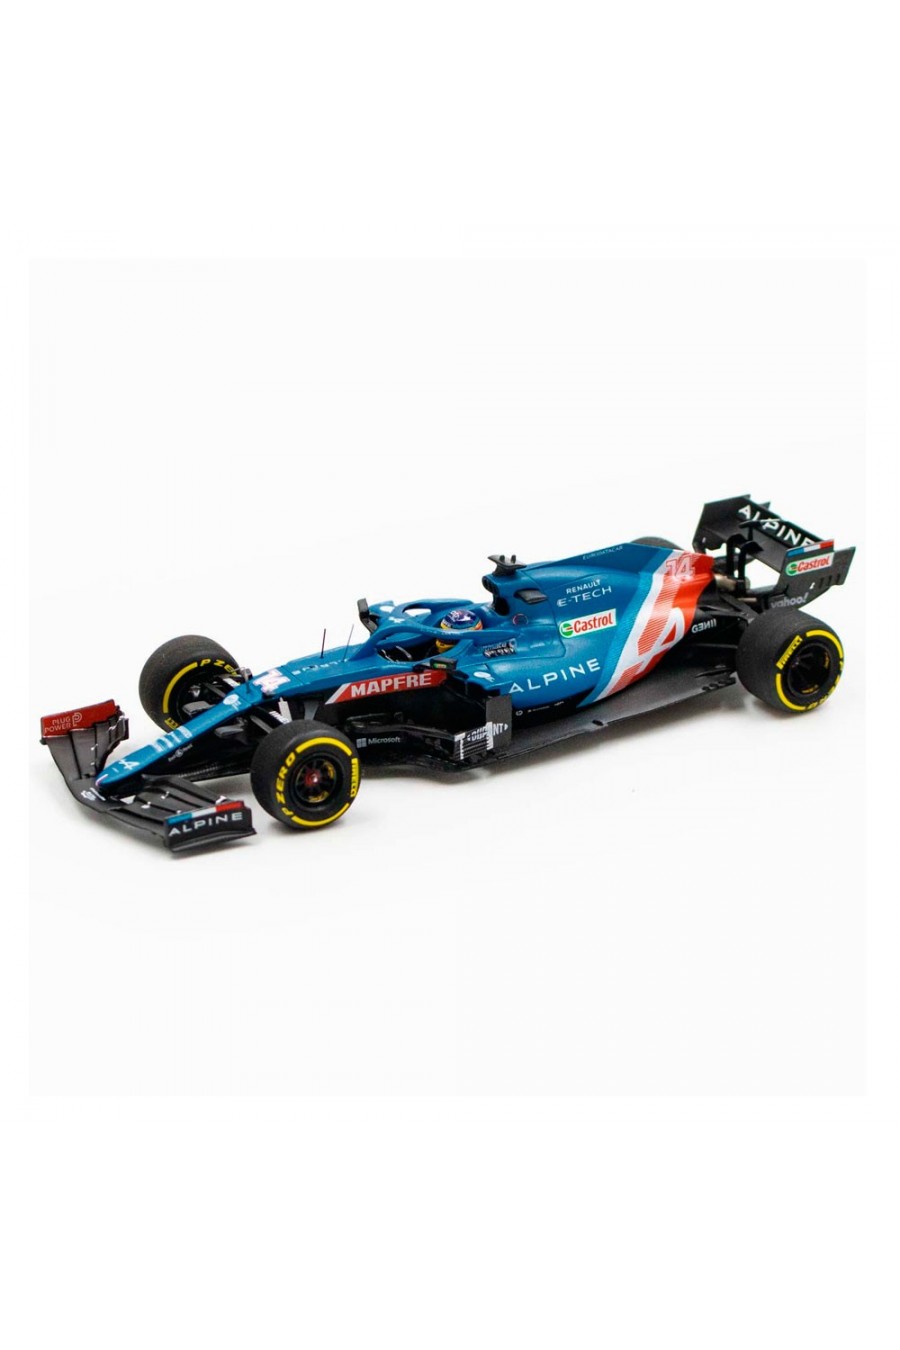 Miniatura 1:43 Coche Alpine F1 A521 2021 'Fernando Alonso'